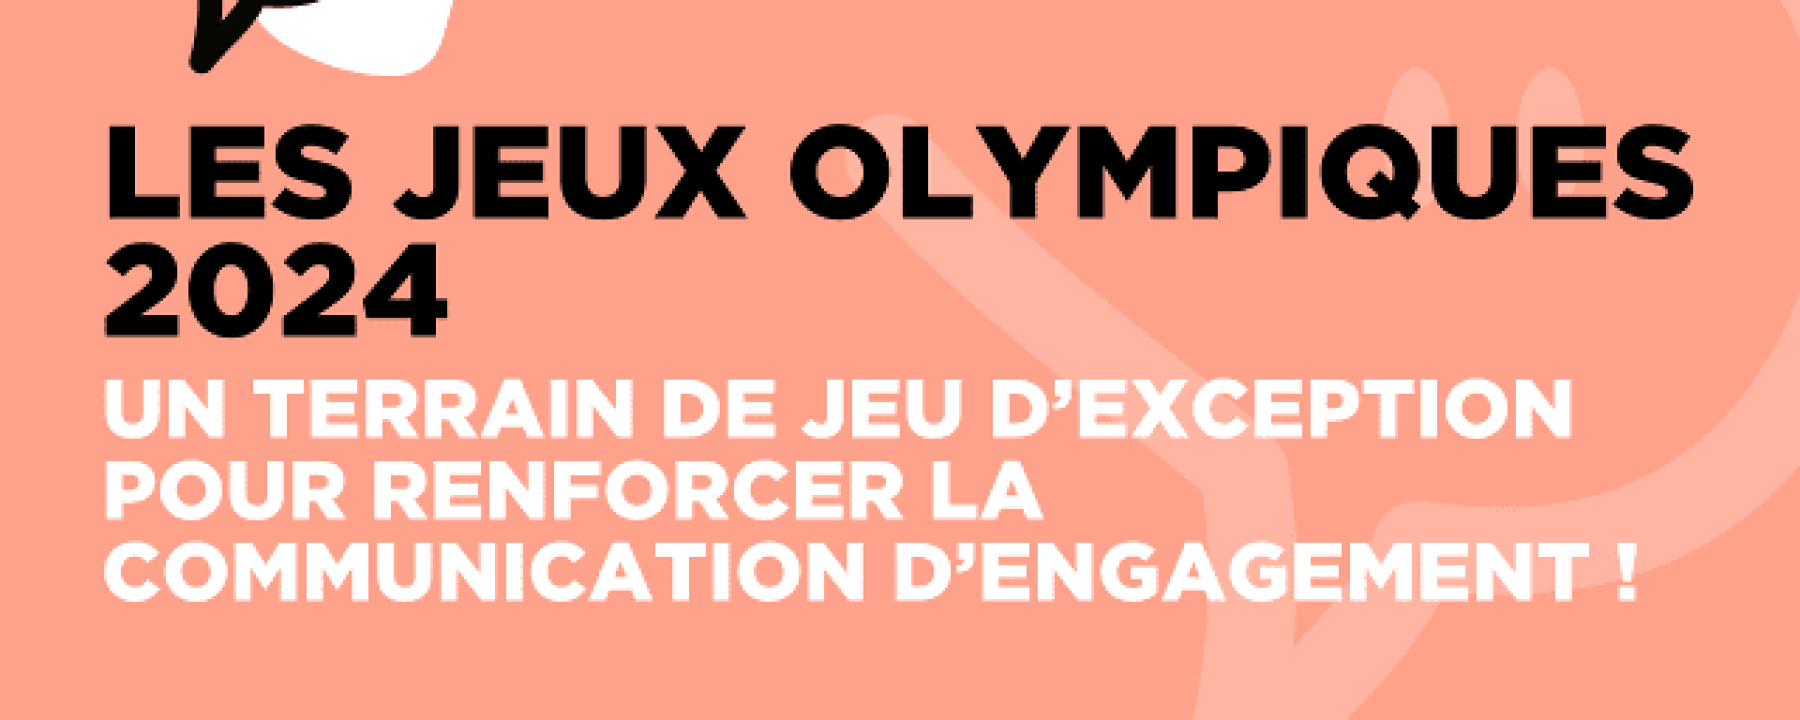 Invitation Les Jeux de Paris 2024 : un terrain de jeu d’exception pour renforcer la communication d’engagement